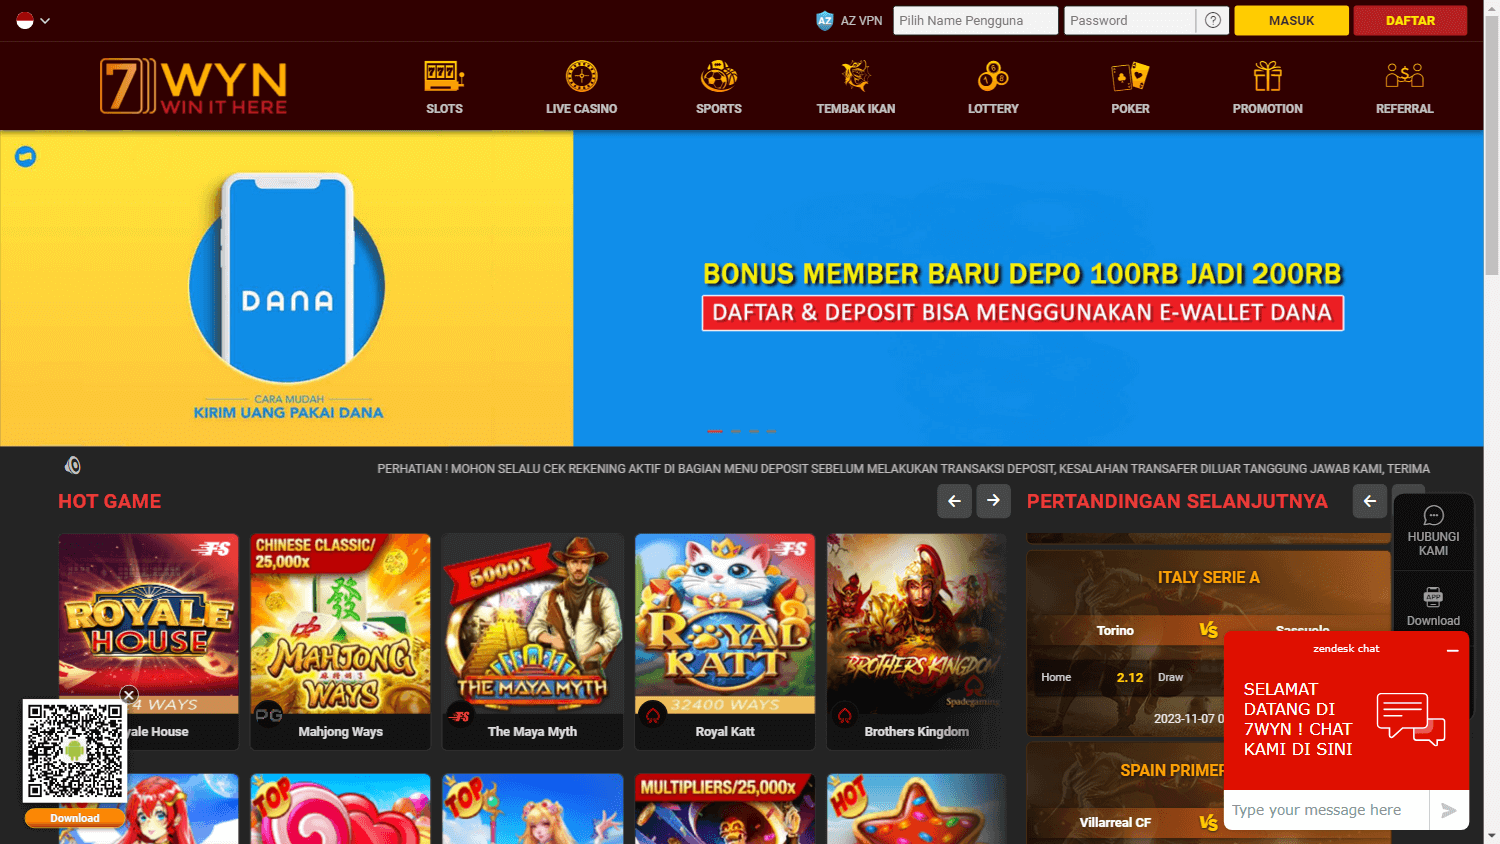 7wyn_casino_homepage_desktop